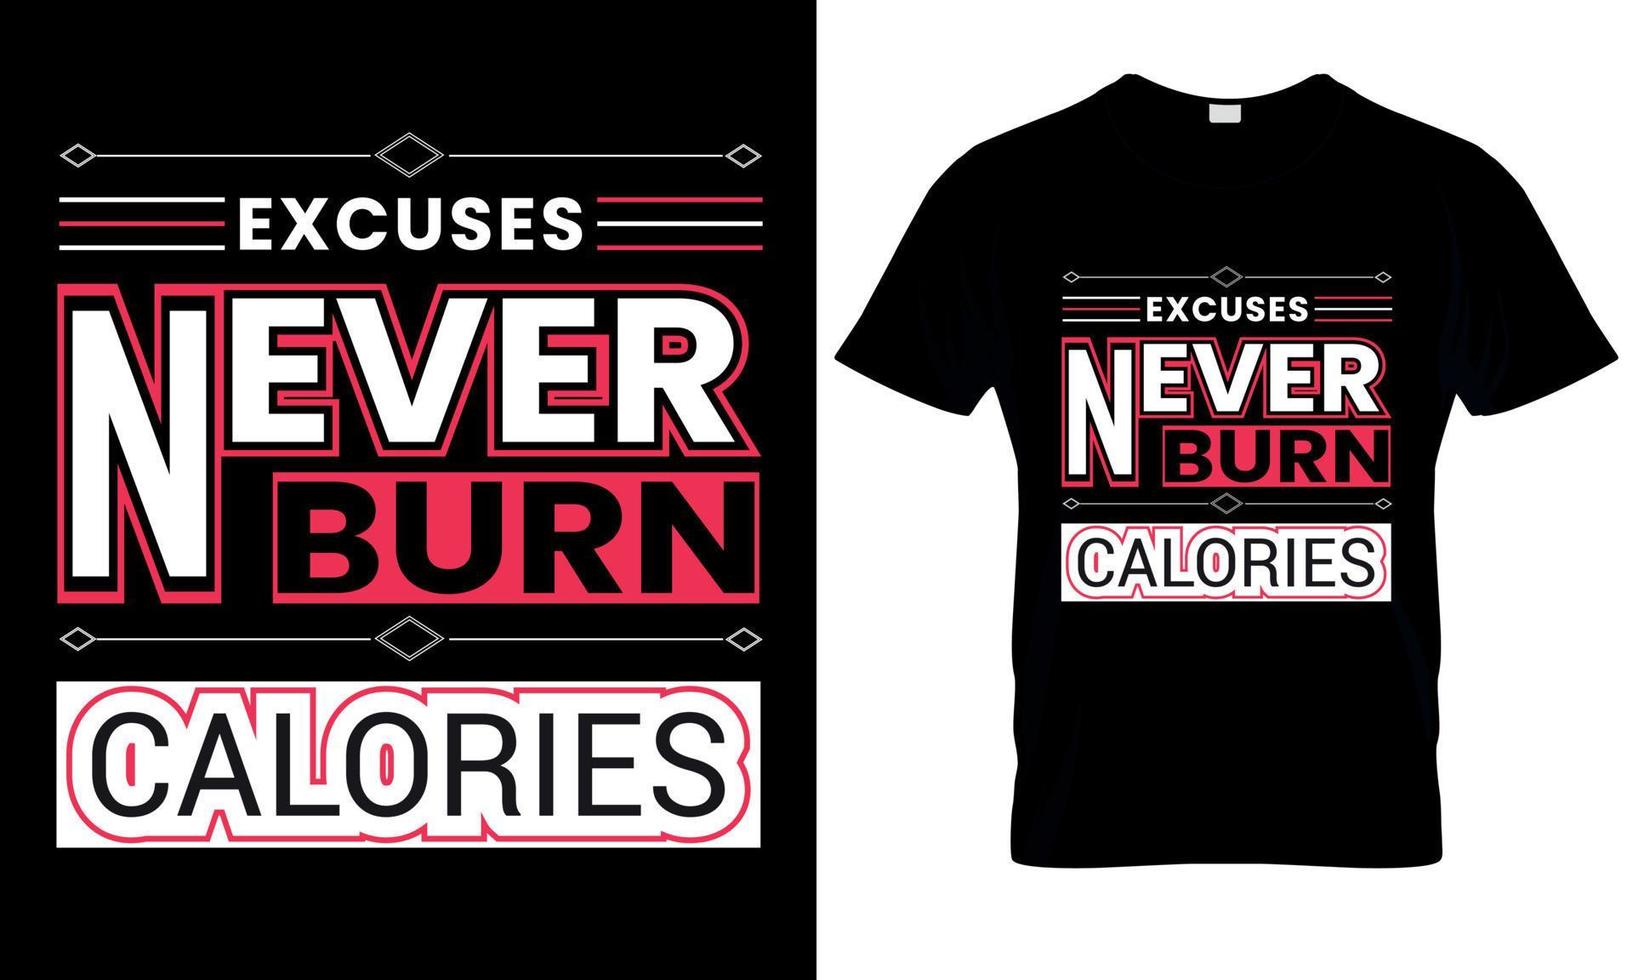 ursäkter aldrig bränna kalorier typografi t-shirt design vektor